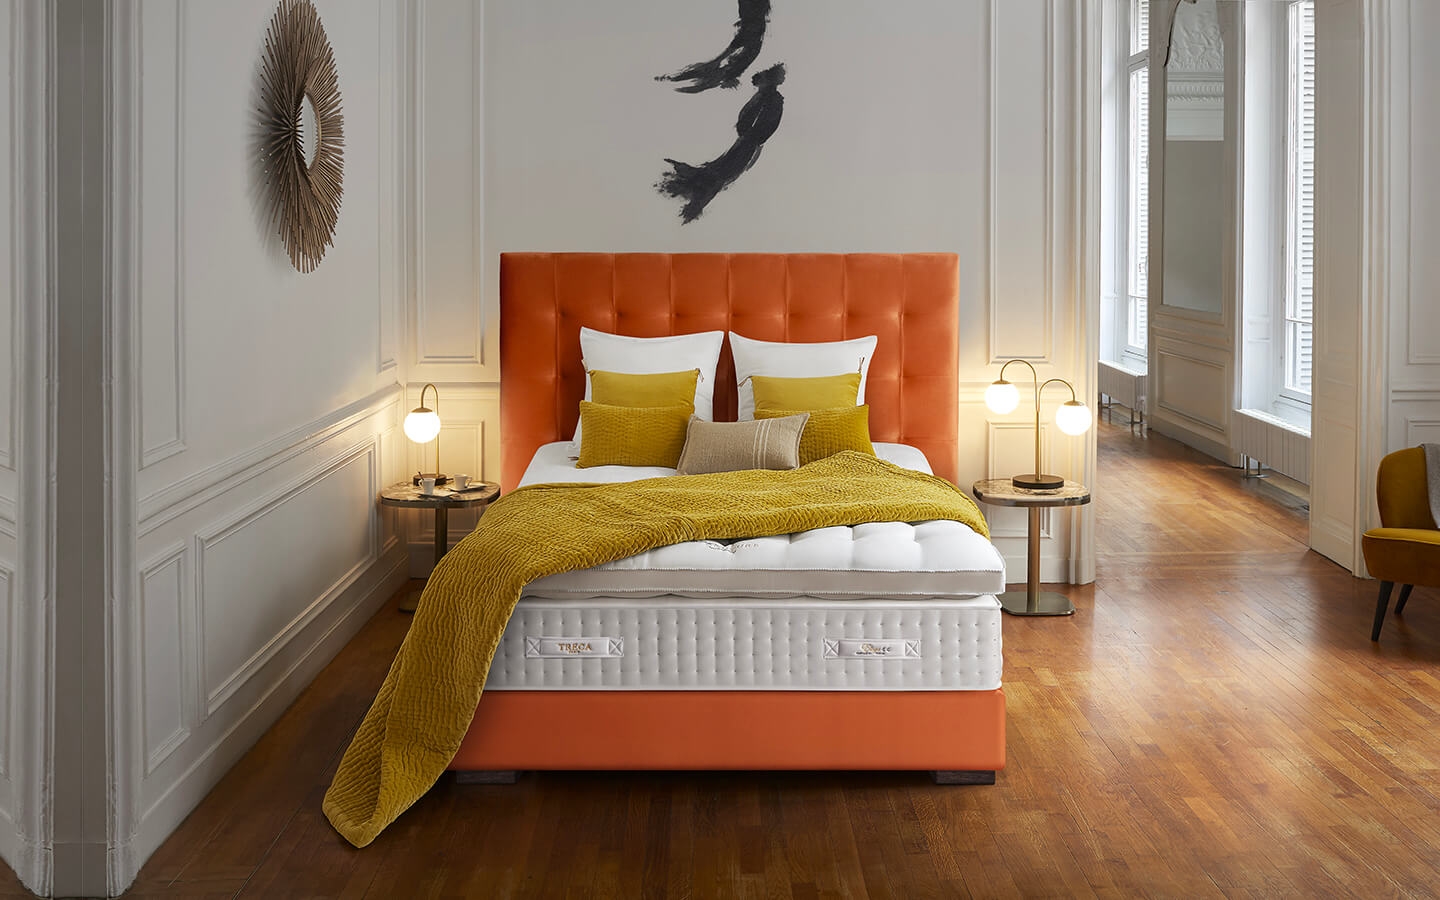 Chambre avec matelas et sommier orange de la marque Treca